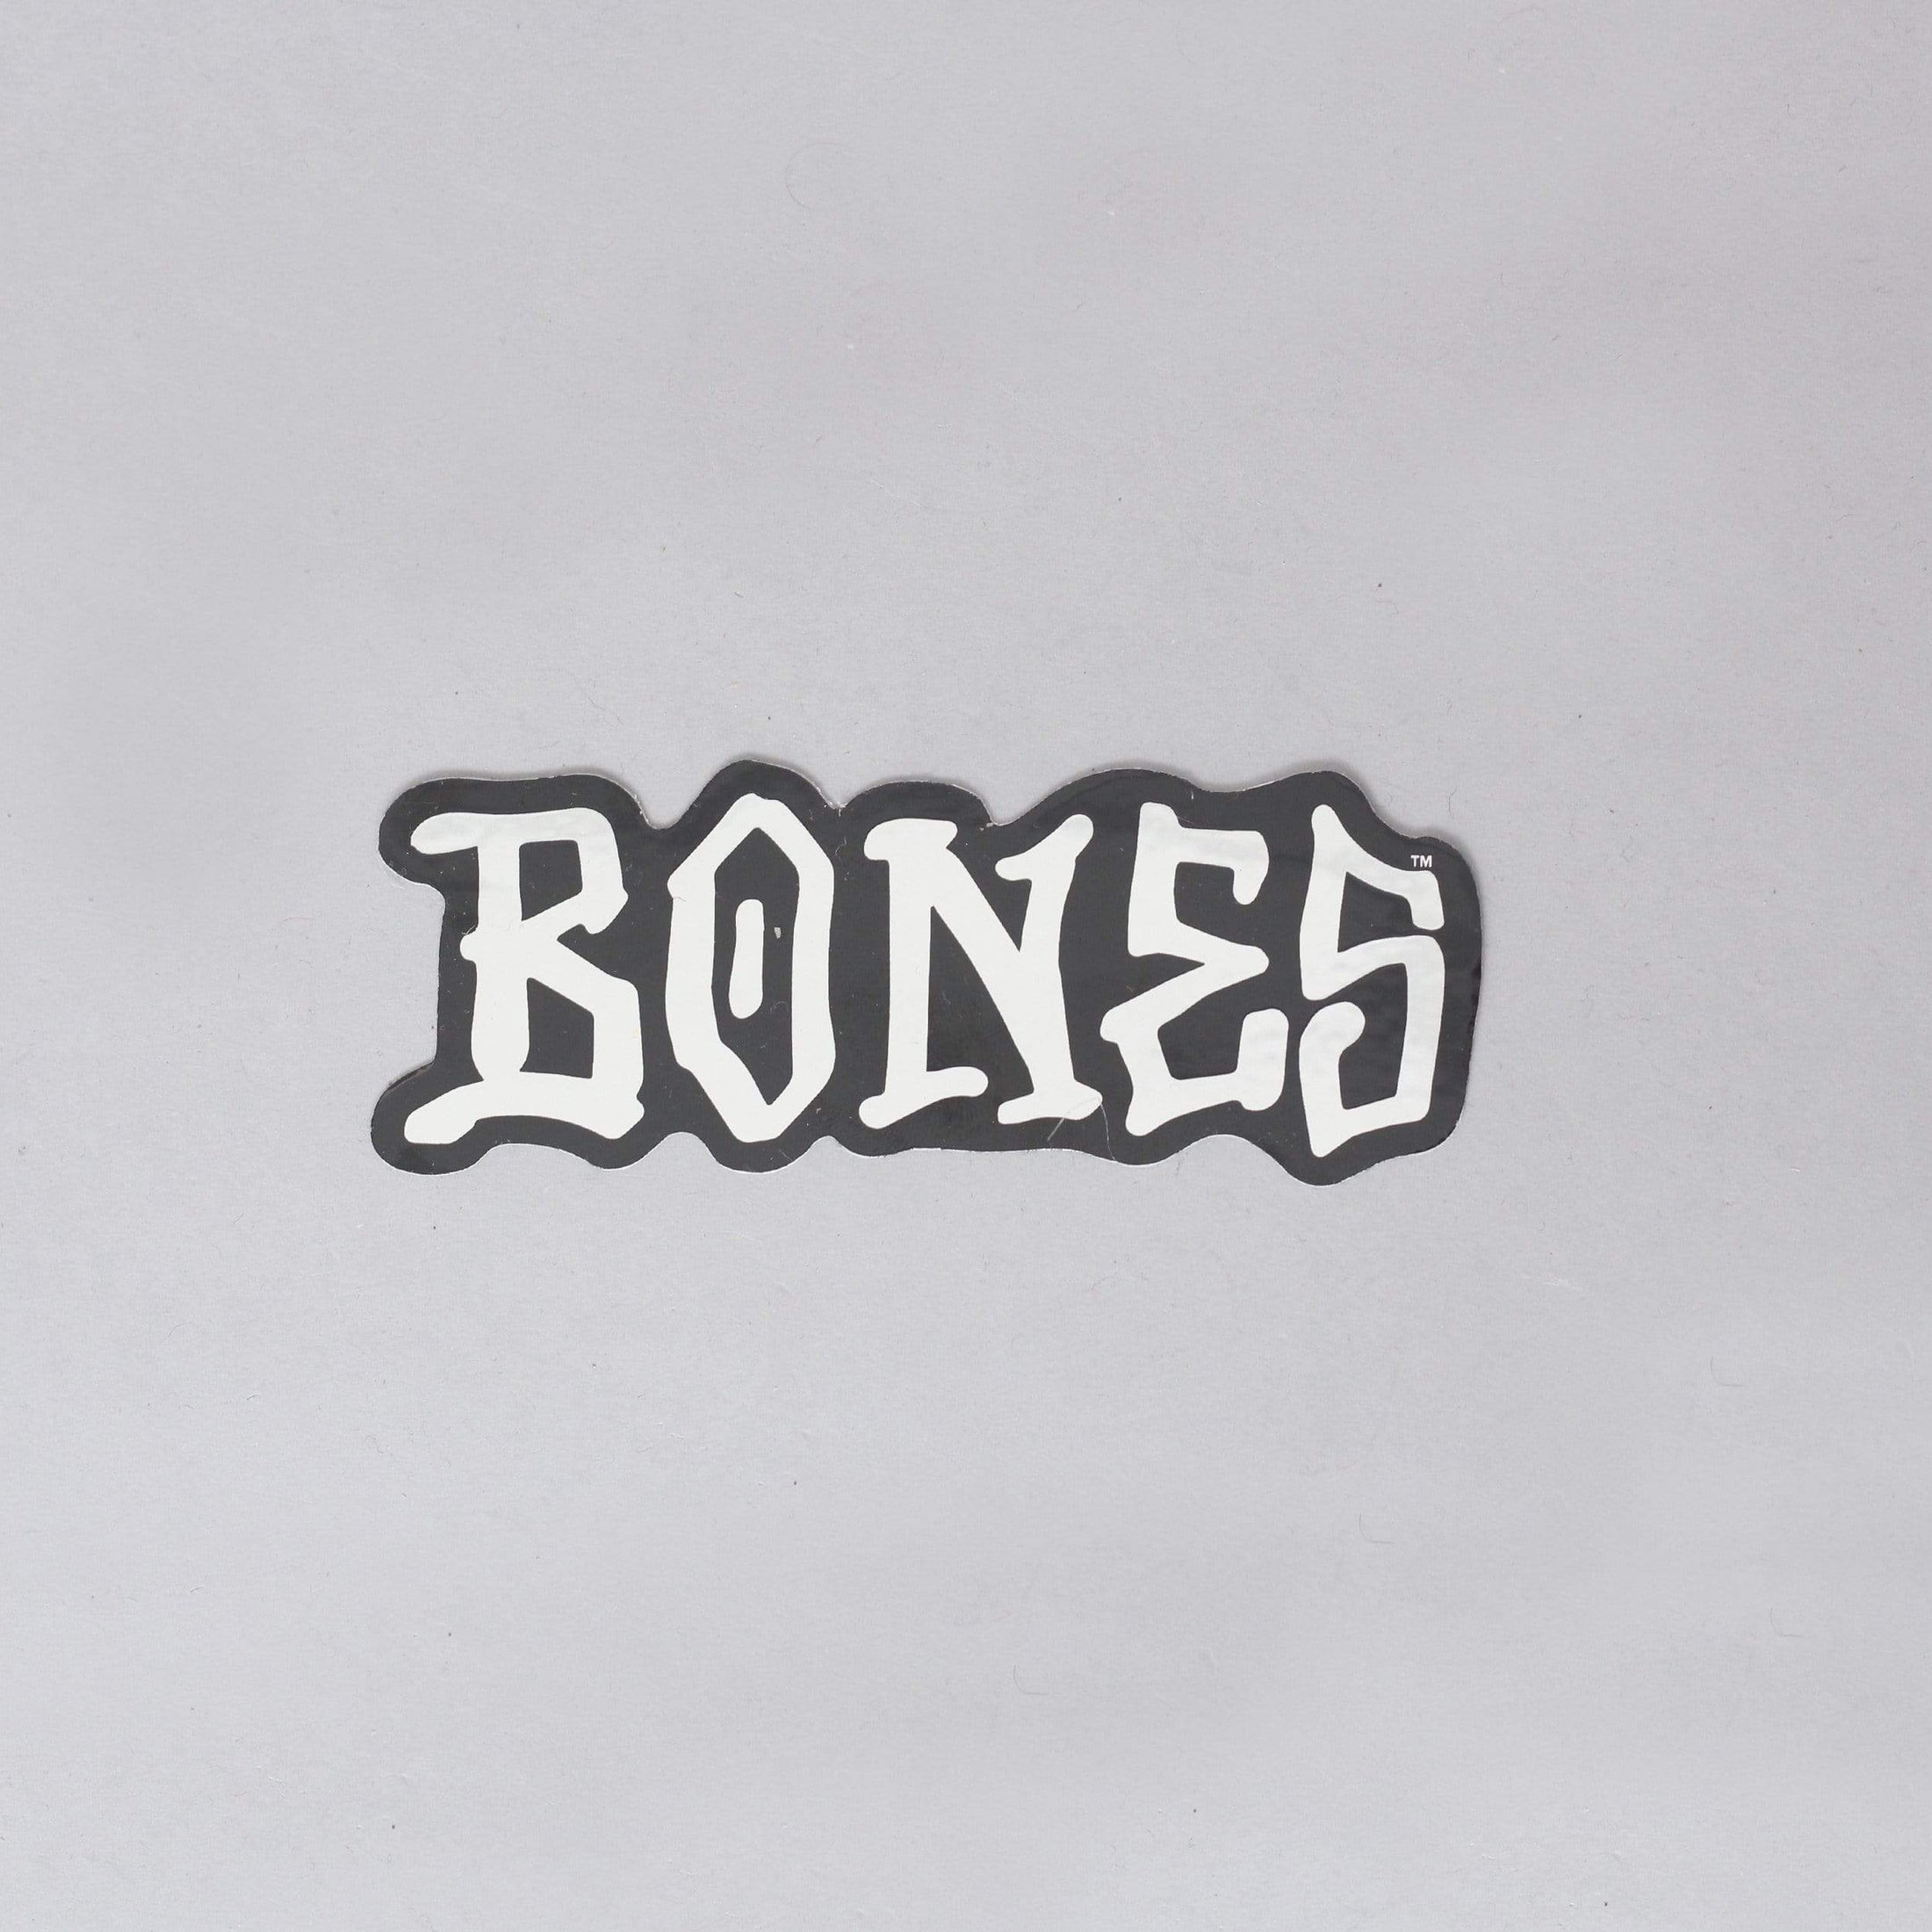 Bones Wheels Sticker Silver